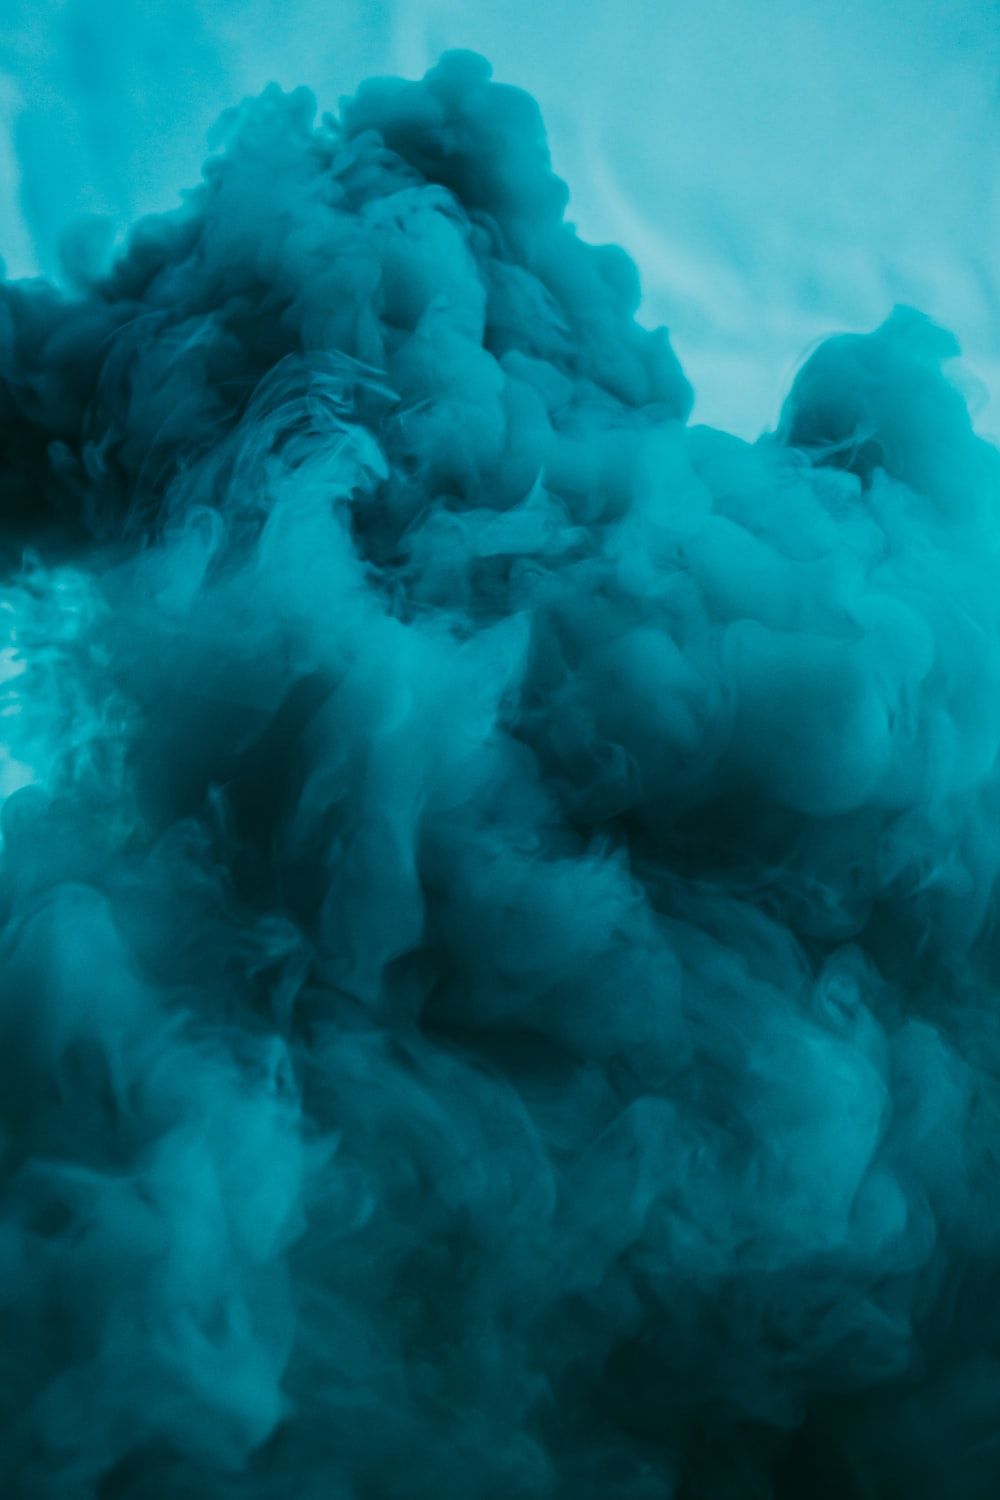 A close up of a blue smoke - Smoke